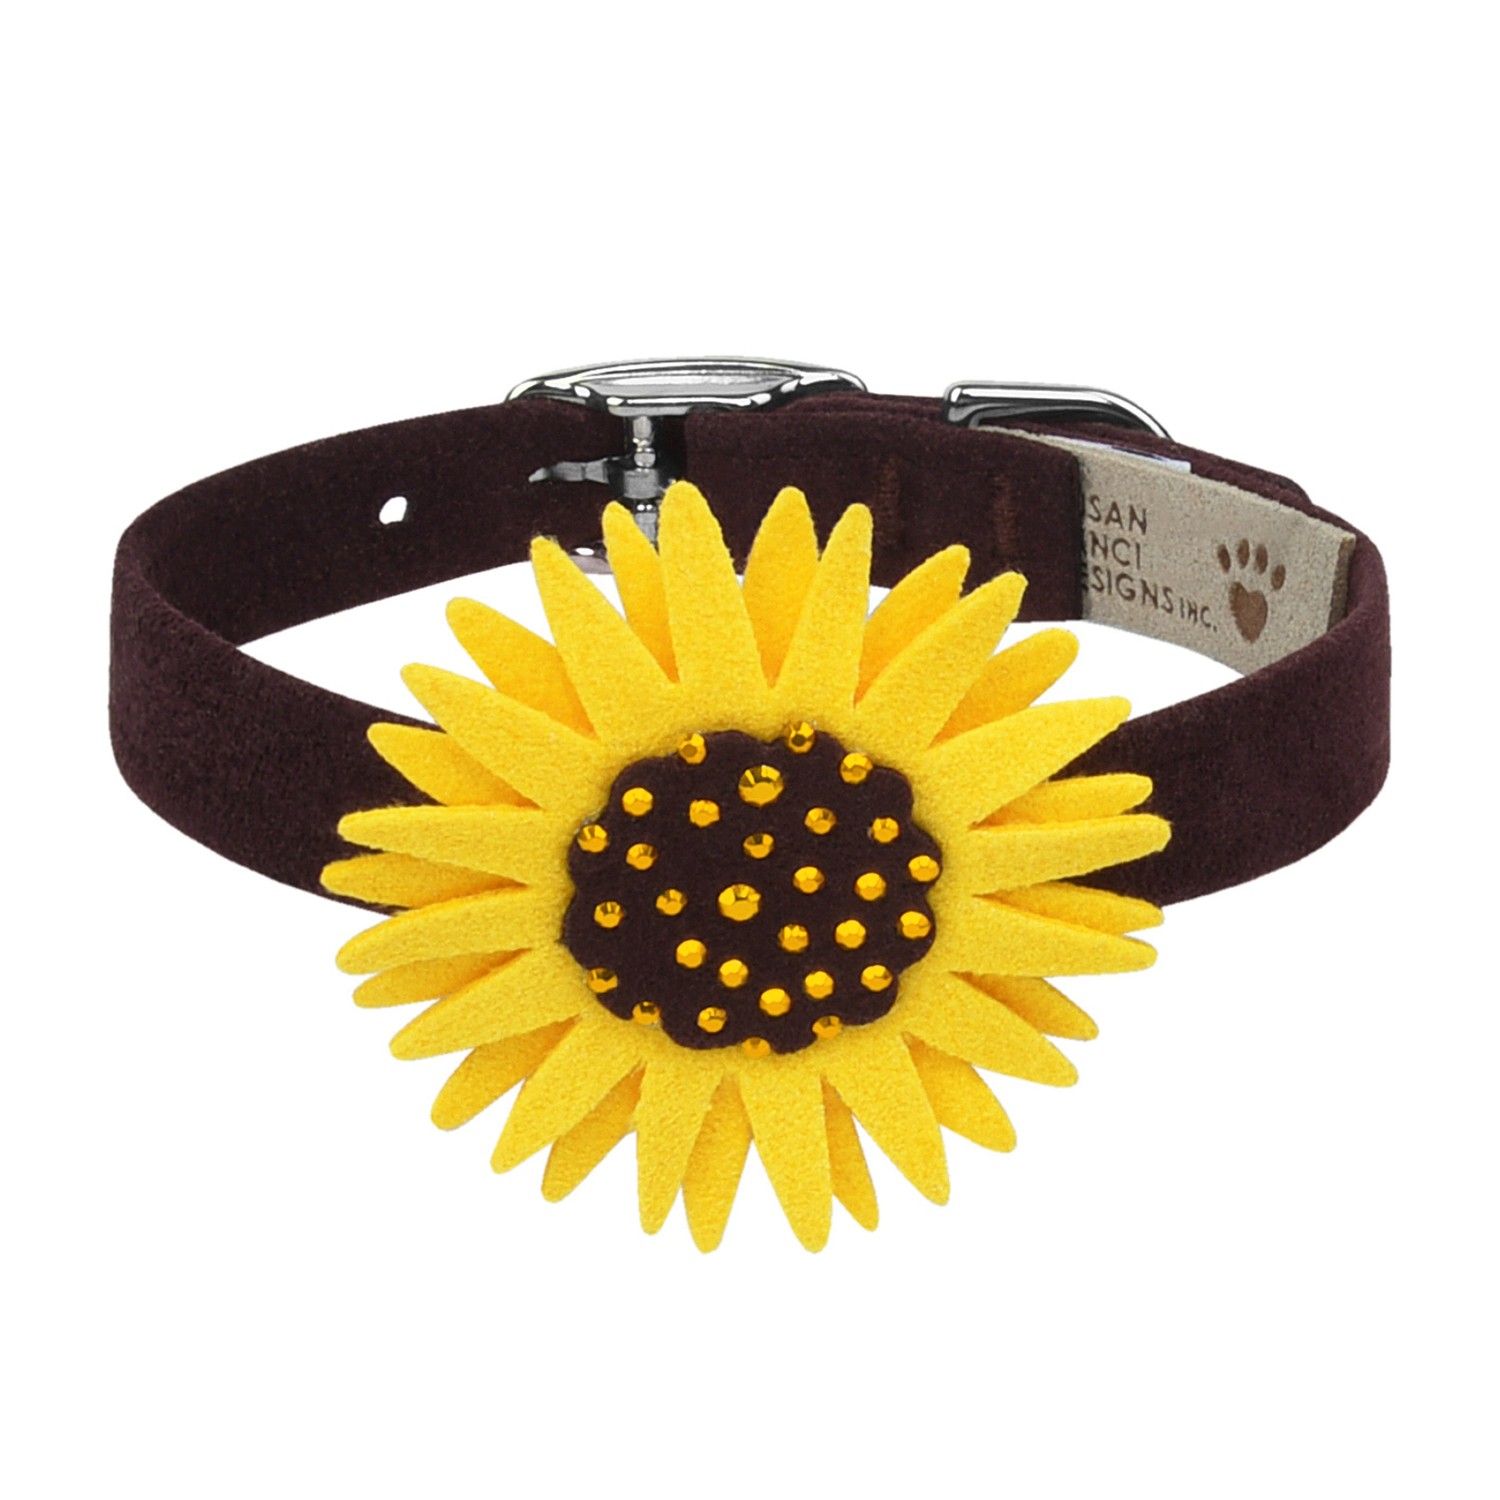 Susan Lanci Sunflower Dog Collar - Chocolate